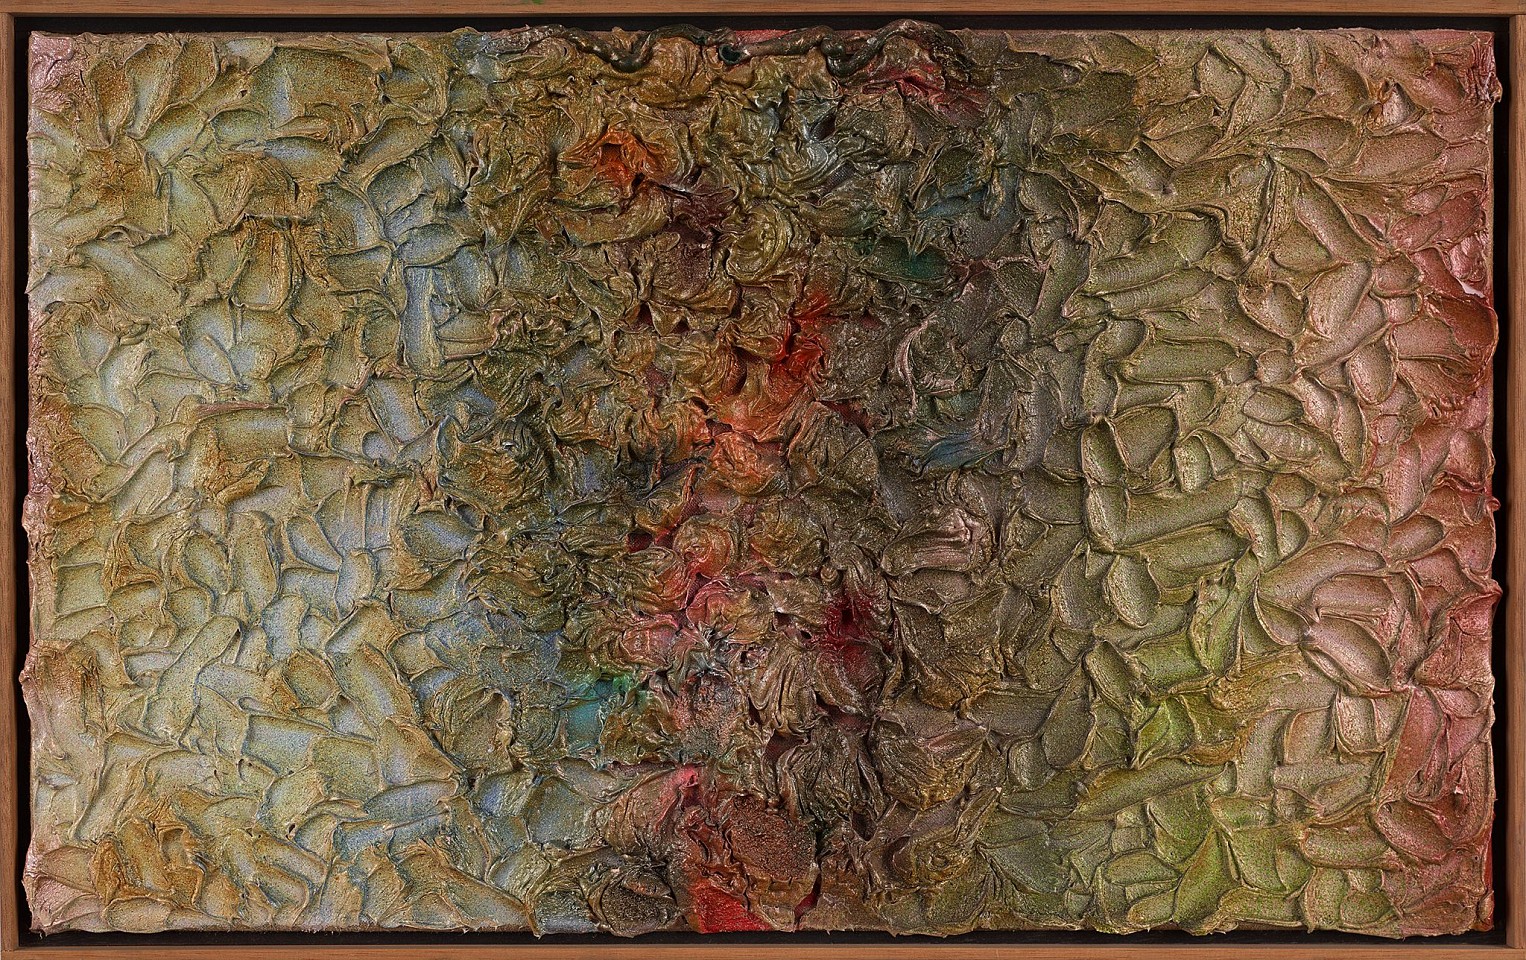 Stanley Boxer, Heavenstill, 1984
Oil on linen, 15 x 25 in. (38.1 x 63.5 cm)
BOX-00073